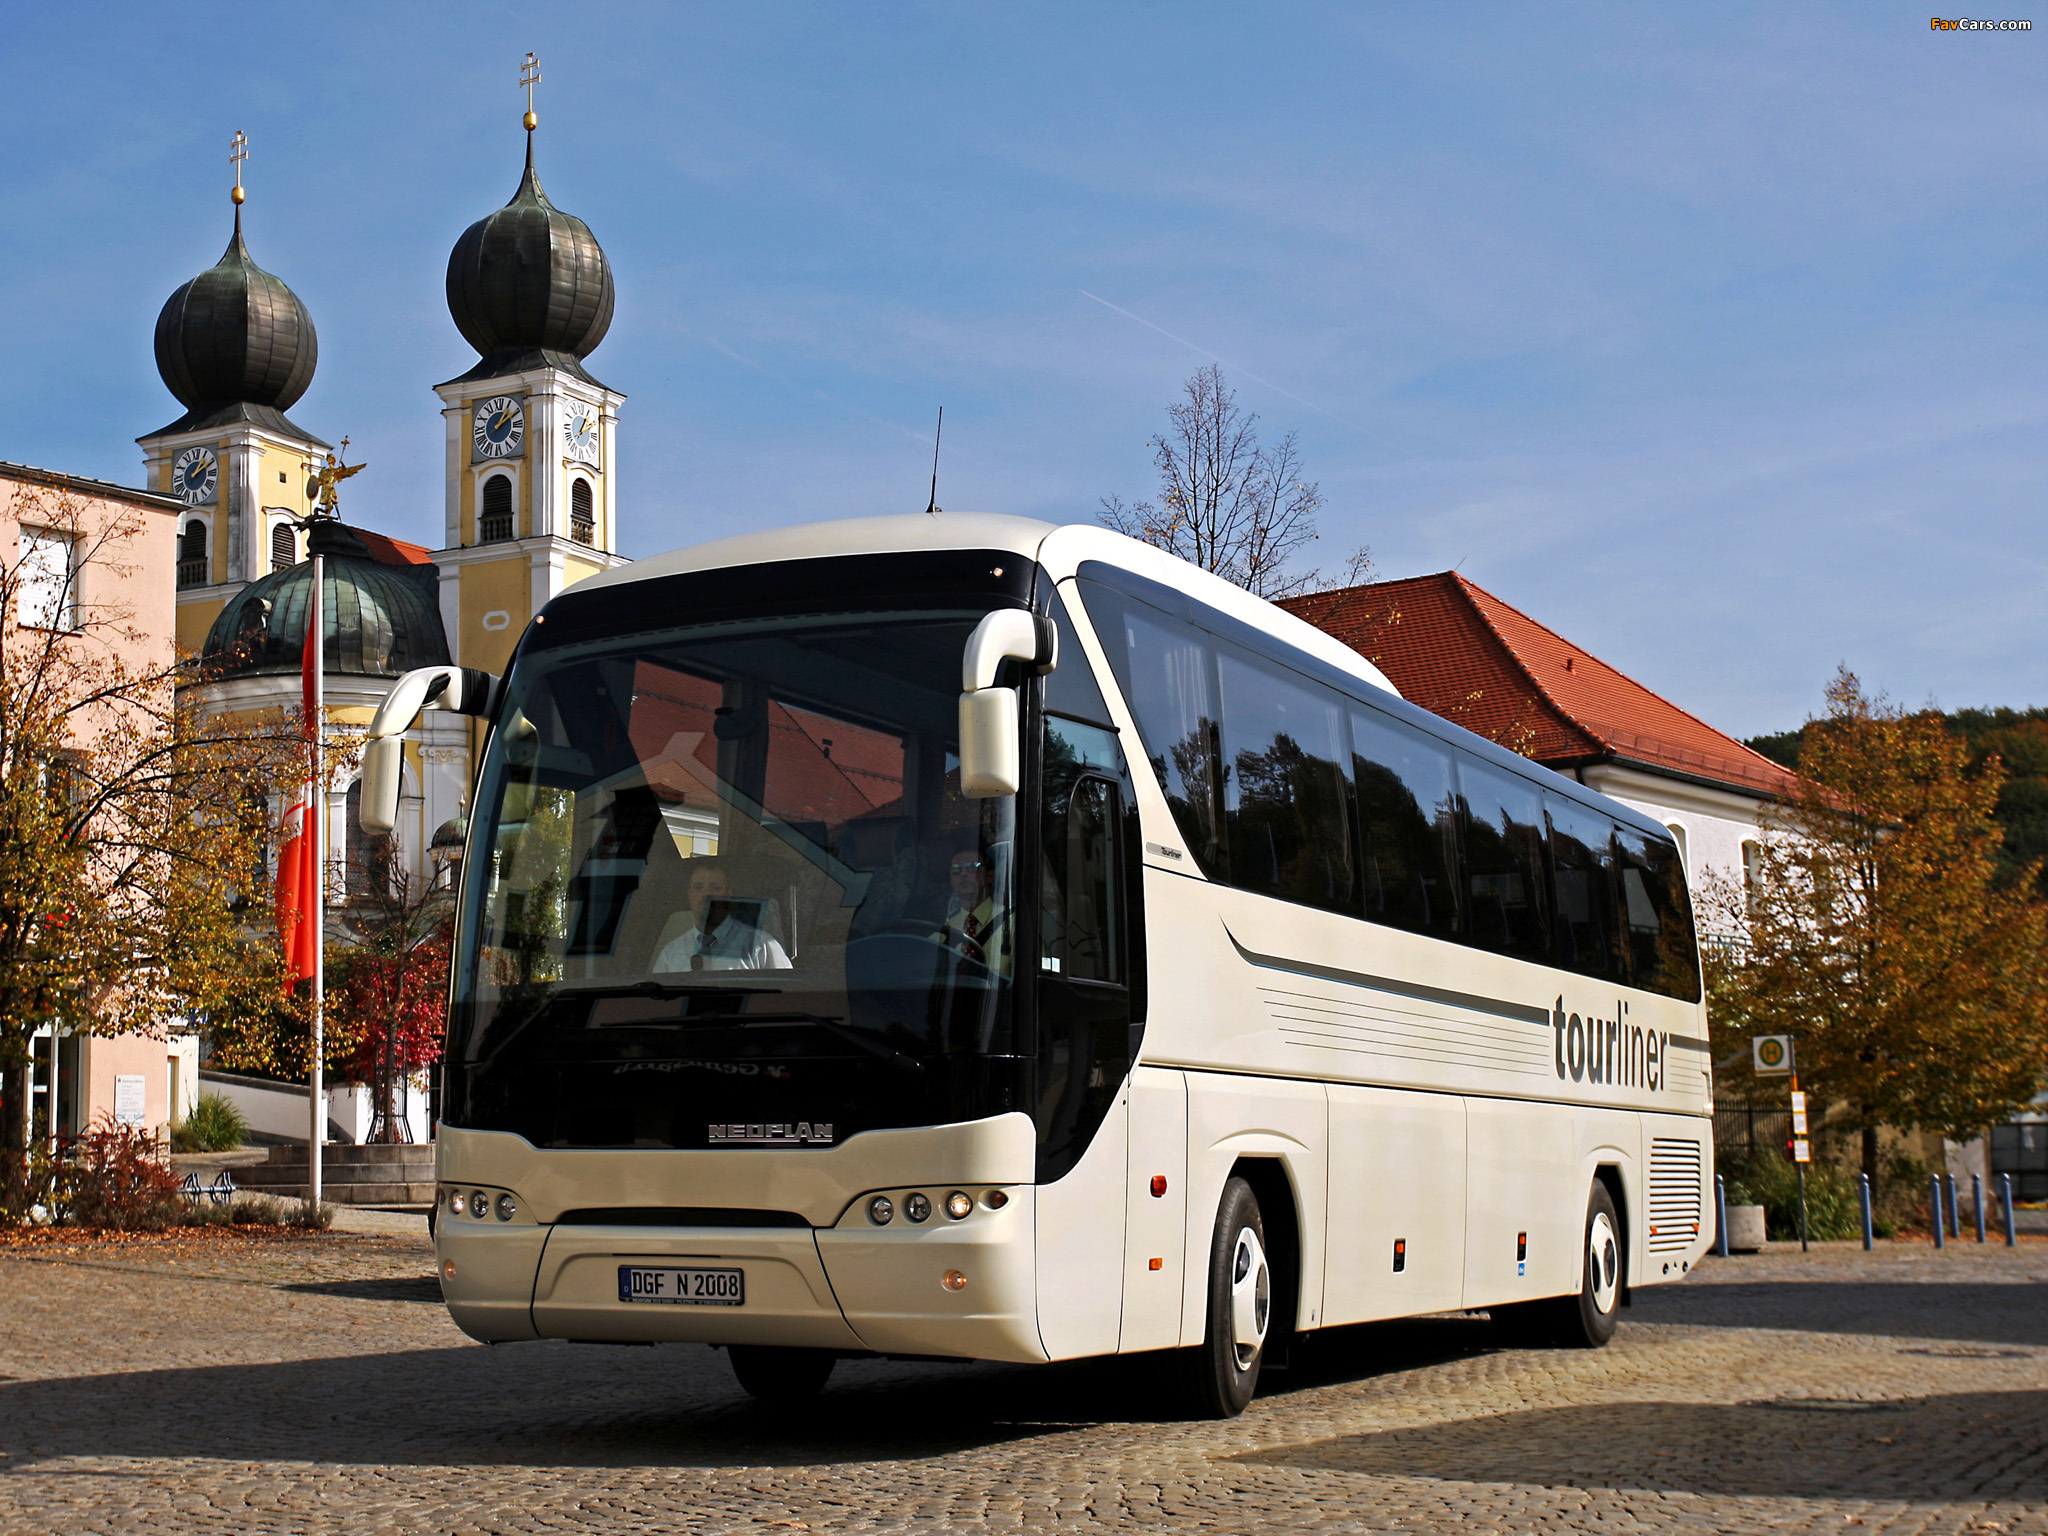 Многодневные автобусные туры